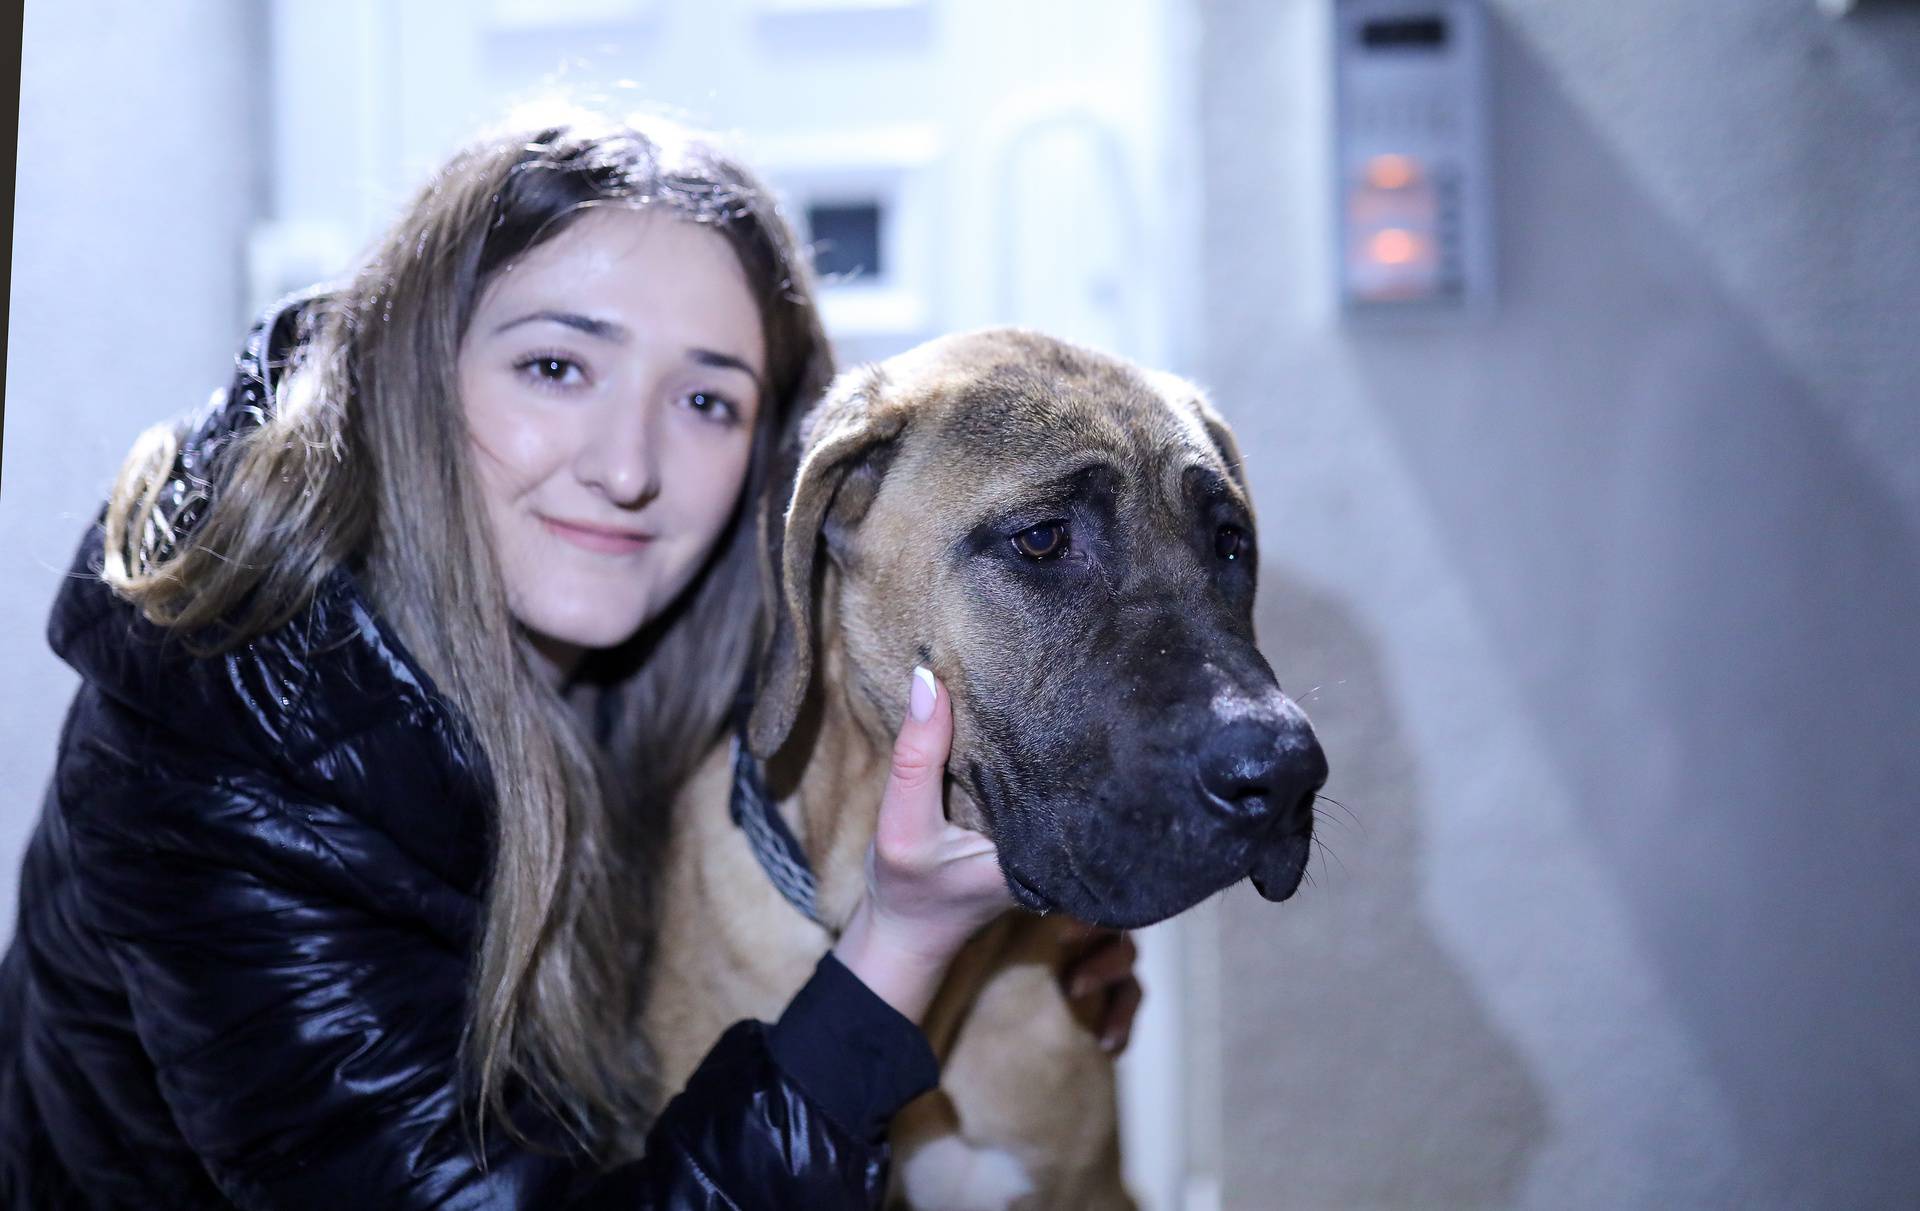 Zagreb: Ponovni susret Ruže Mihaljević i njenog izgubljenog psa Kana nakon 4 mjeseca potrage